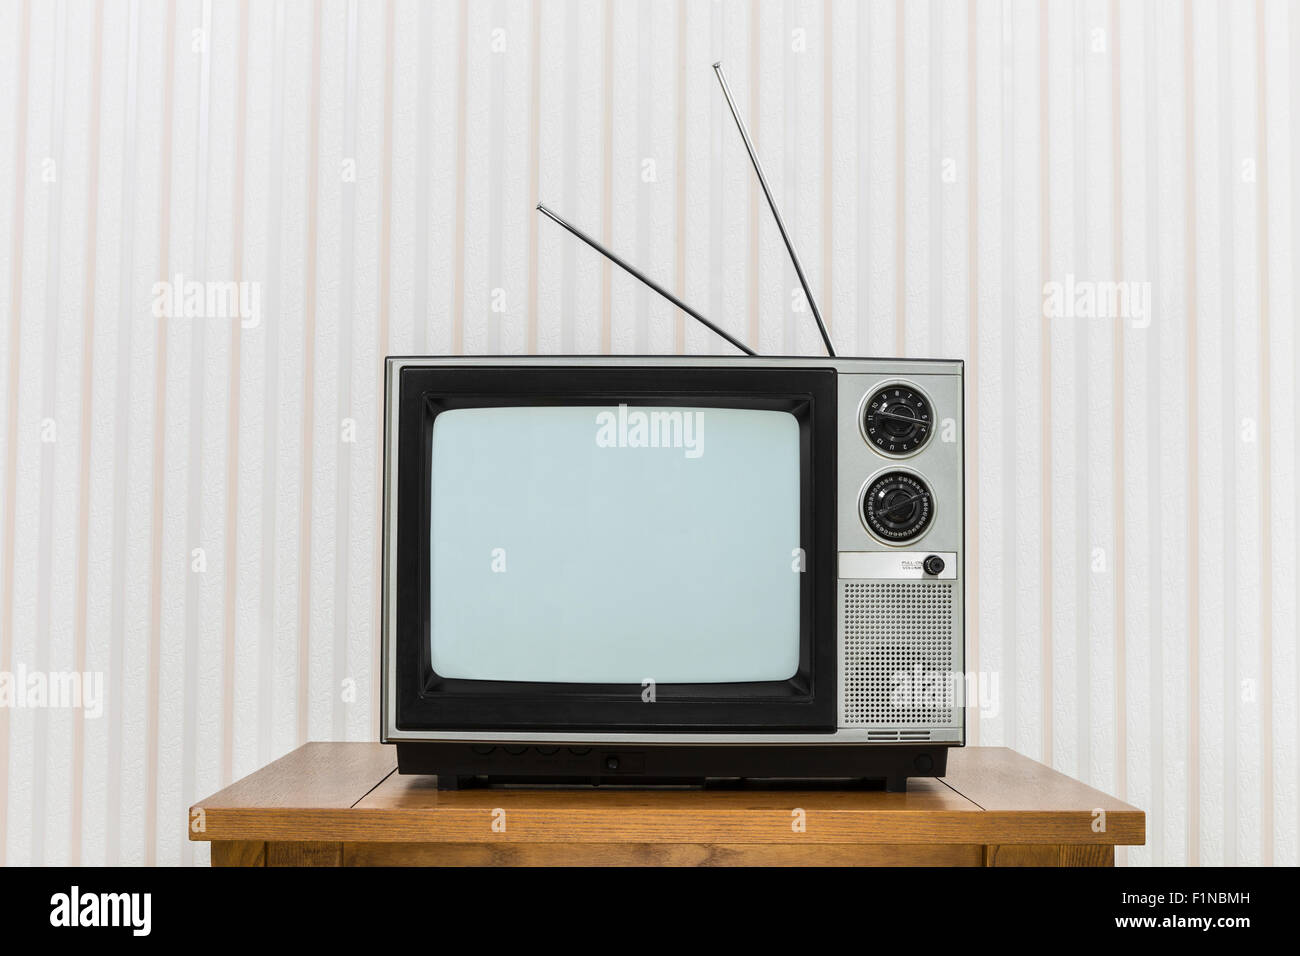 Ancien téléviseur analogique avec antenne sur table en bois Banque D'Images